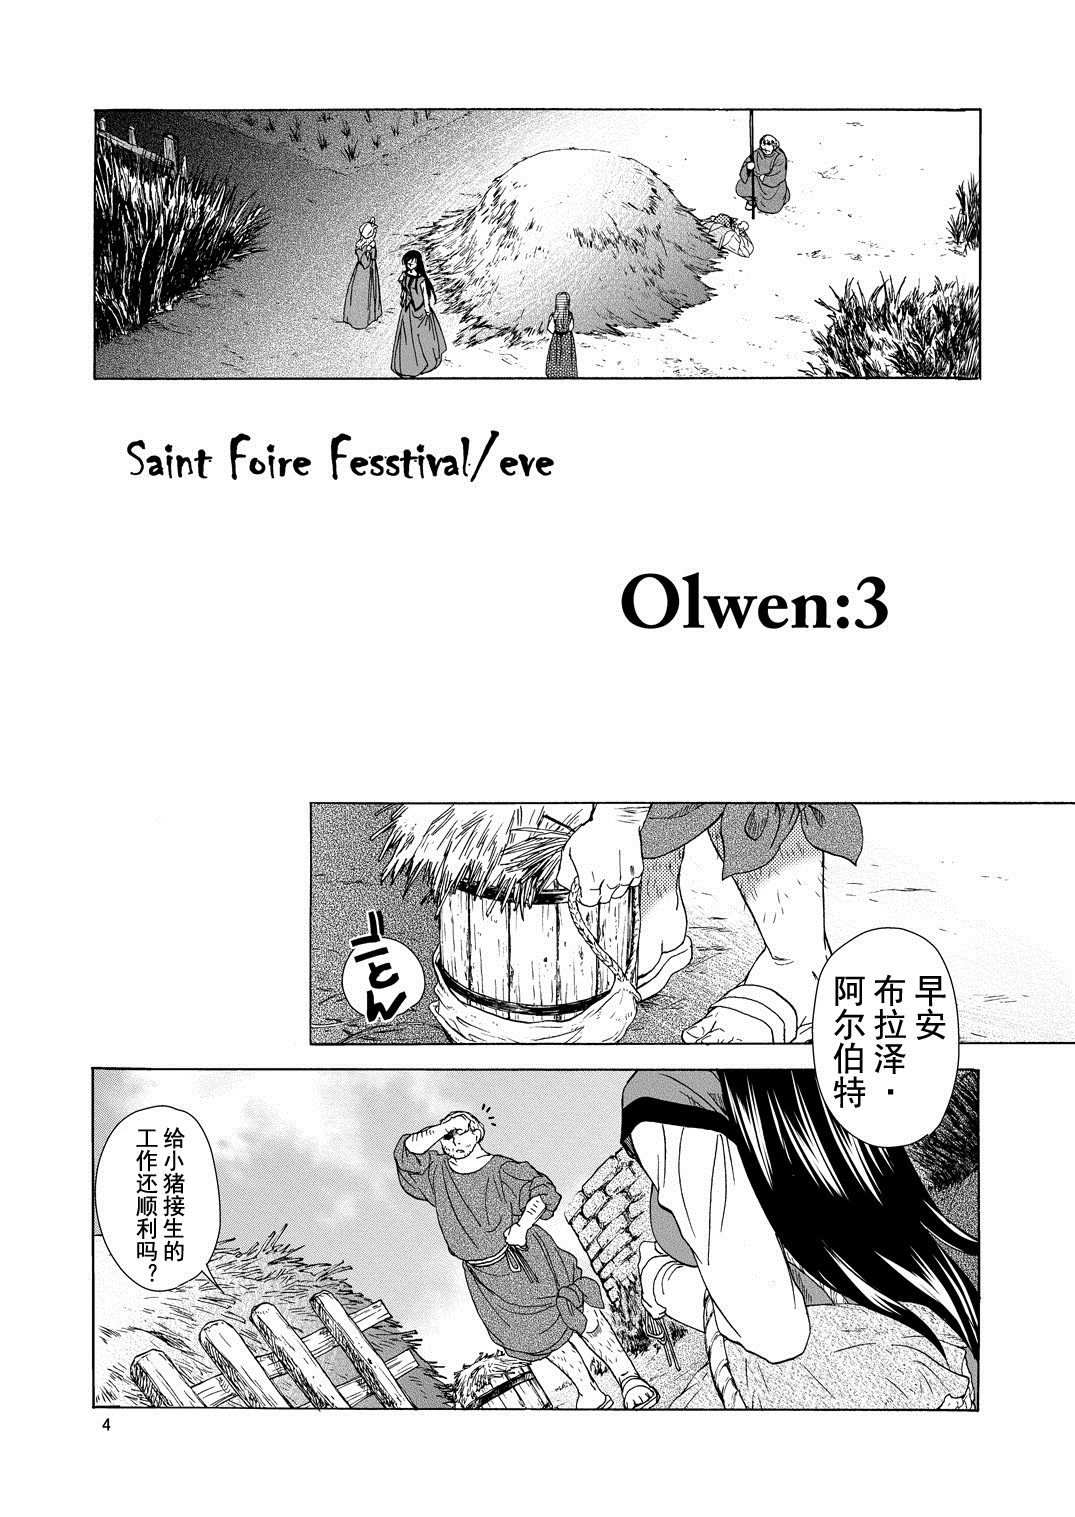 [床子屋 (HEIZO, 鬼頭えん)] Saint Foire Festivaleve Olwen3 + どたんばせとぎわ崖っぷち 26 [中国翻訳]